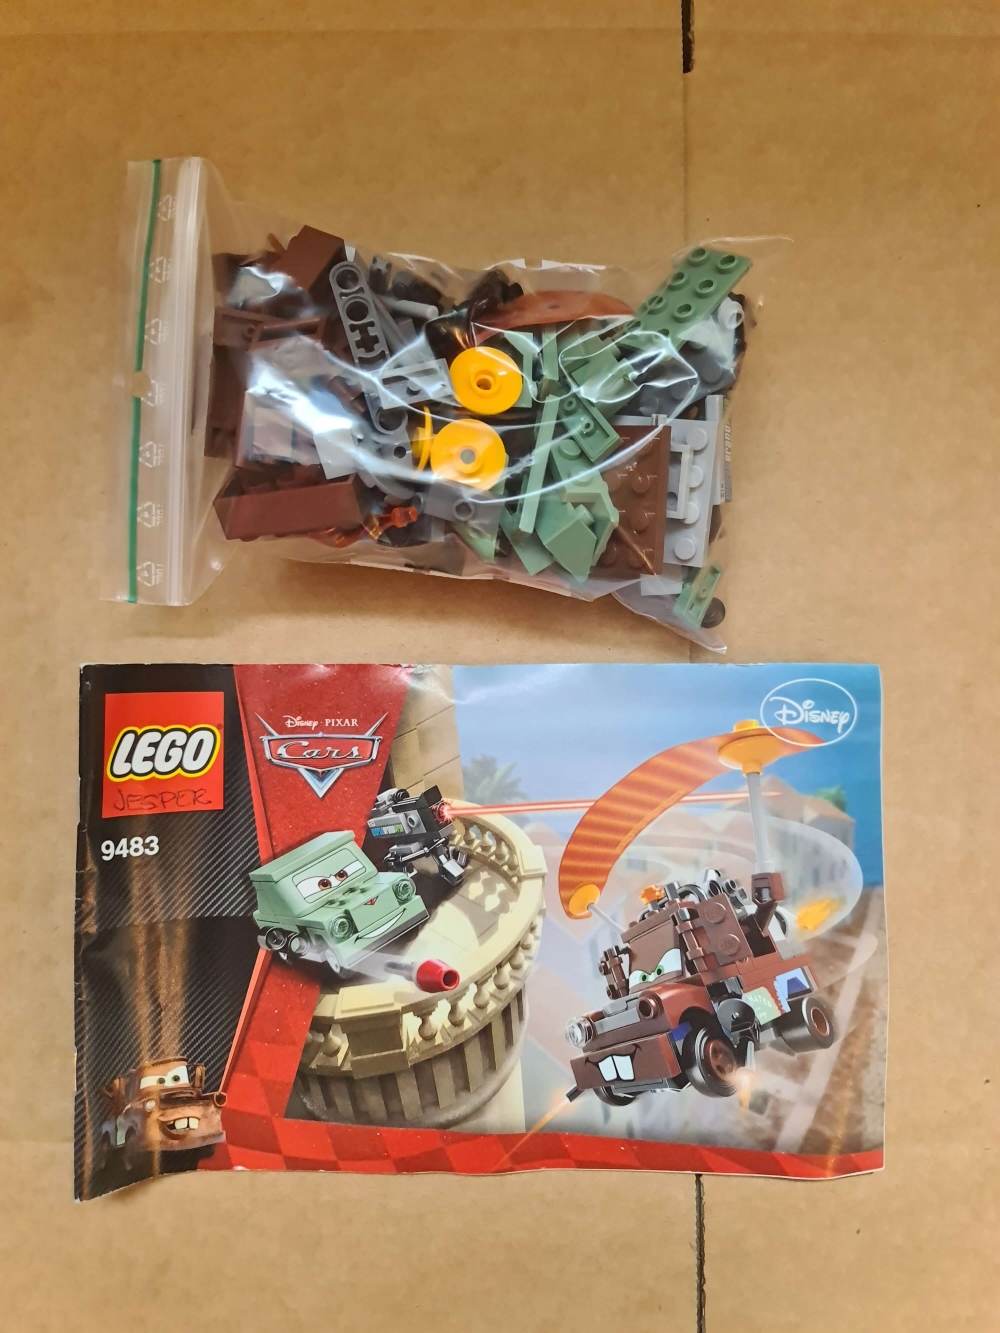 Sett 9483 fra Lego Cars : Cars 2 serien.
Meget pent.
Komplett med manual.